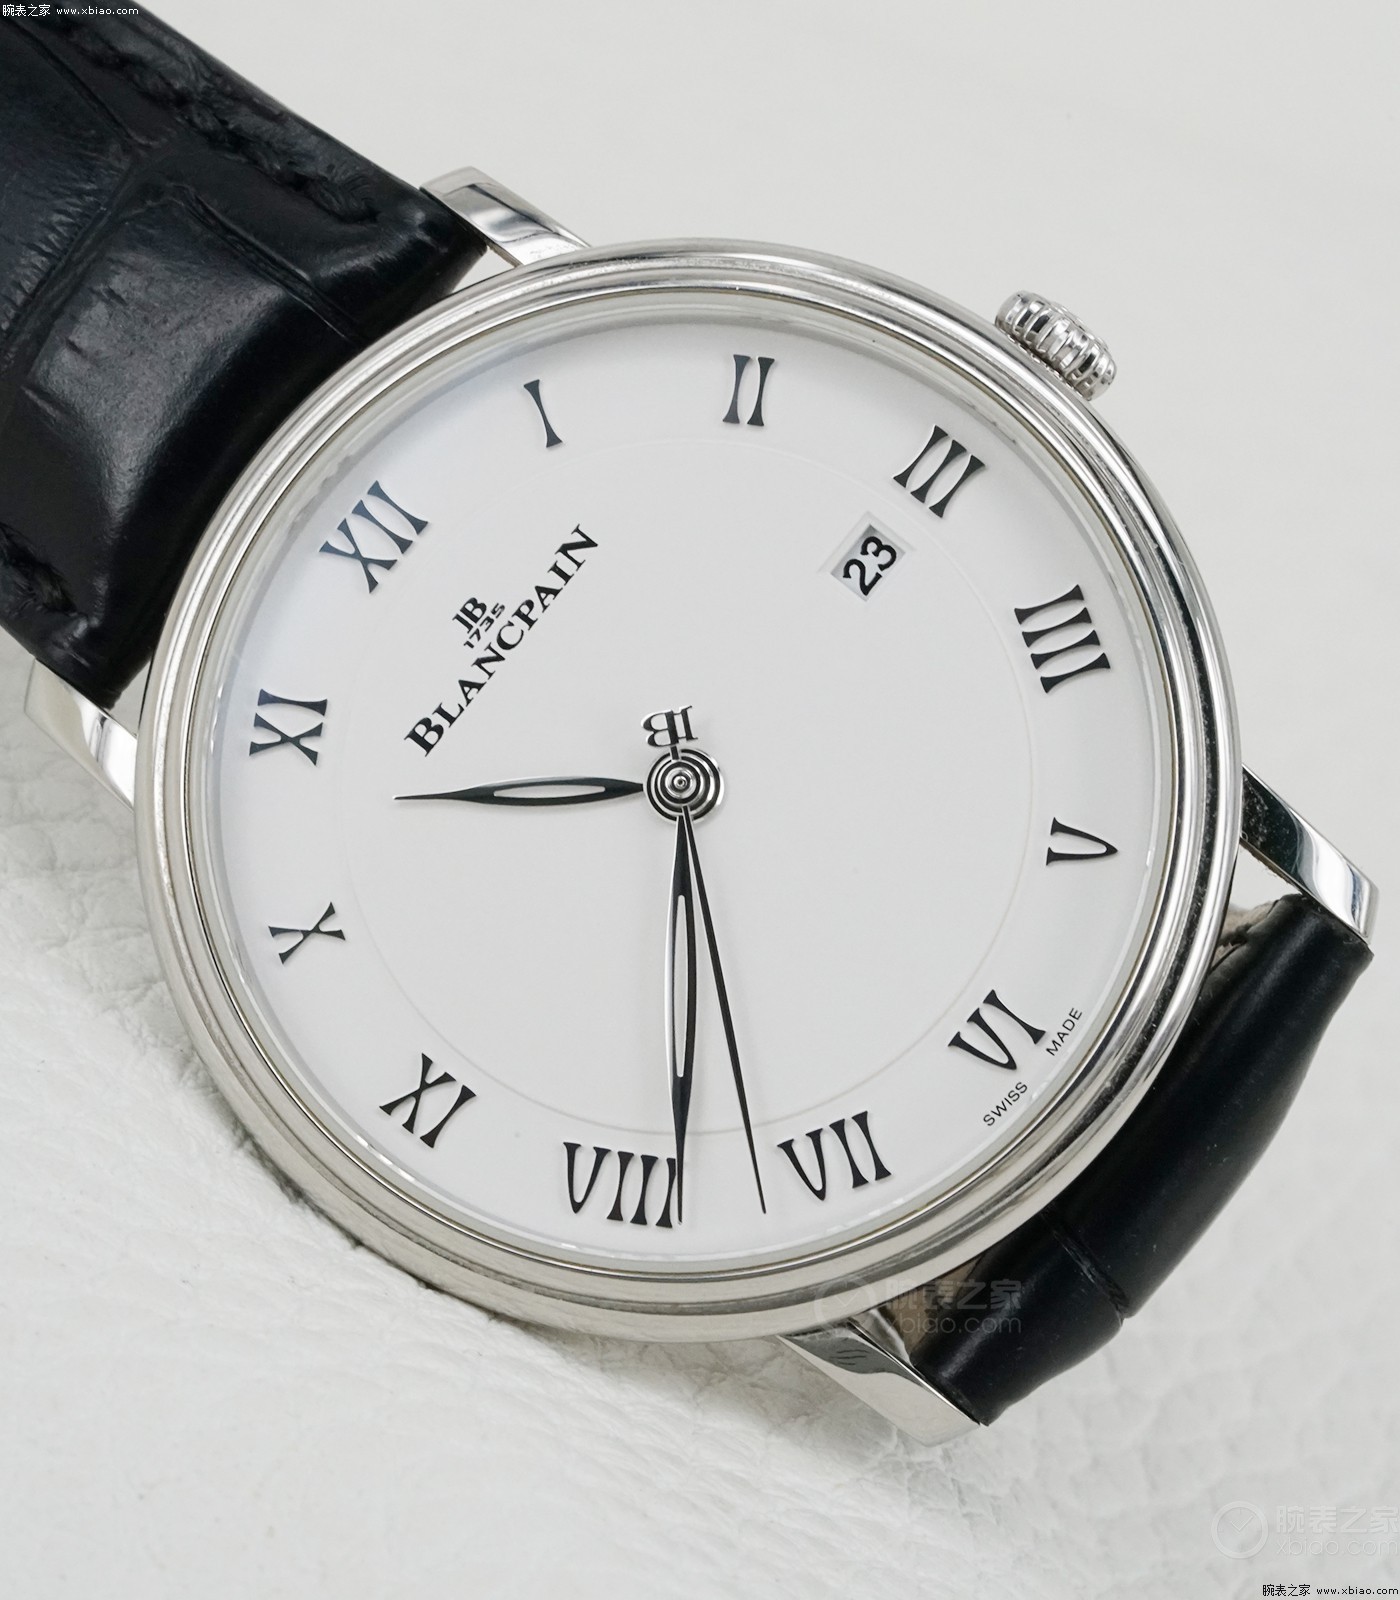 宝珀经典系列6651-1127-55B腕表，官价7万7，尖端名表入门款，简约但不简单